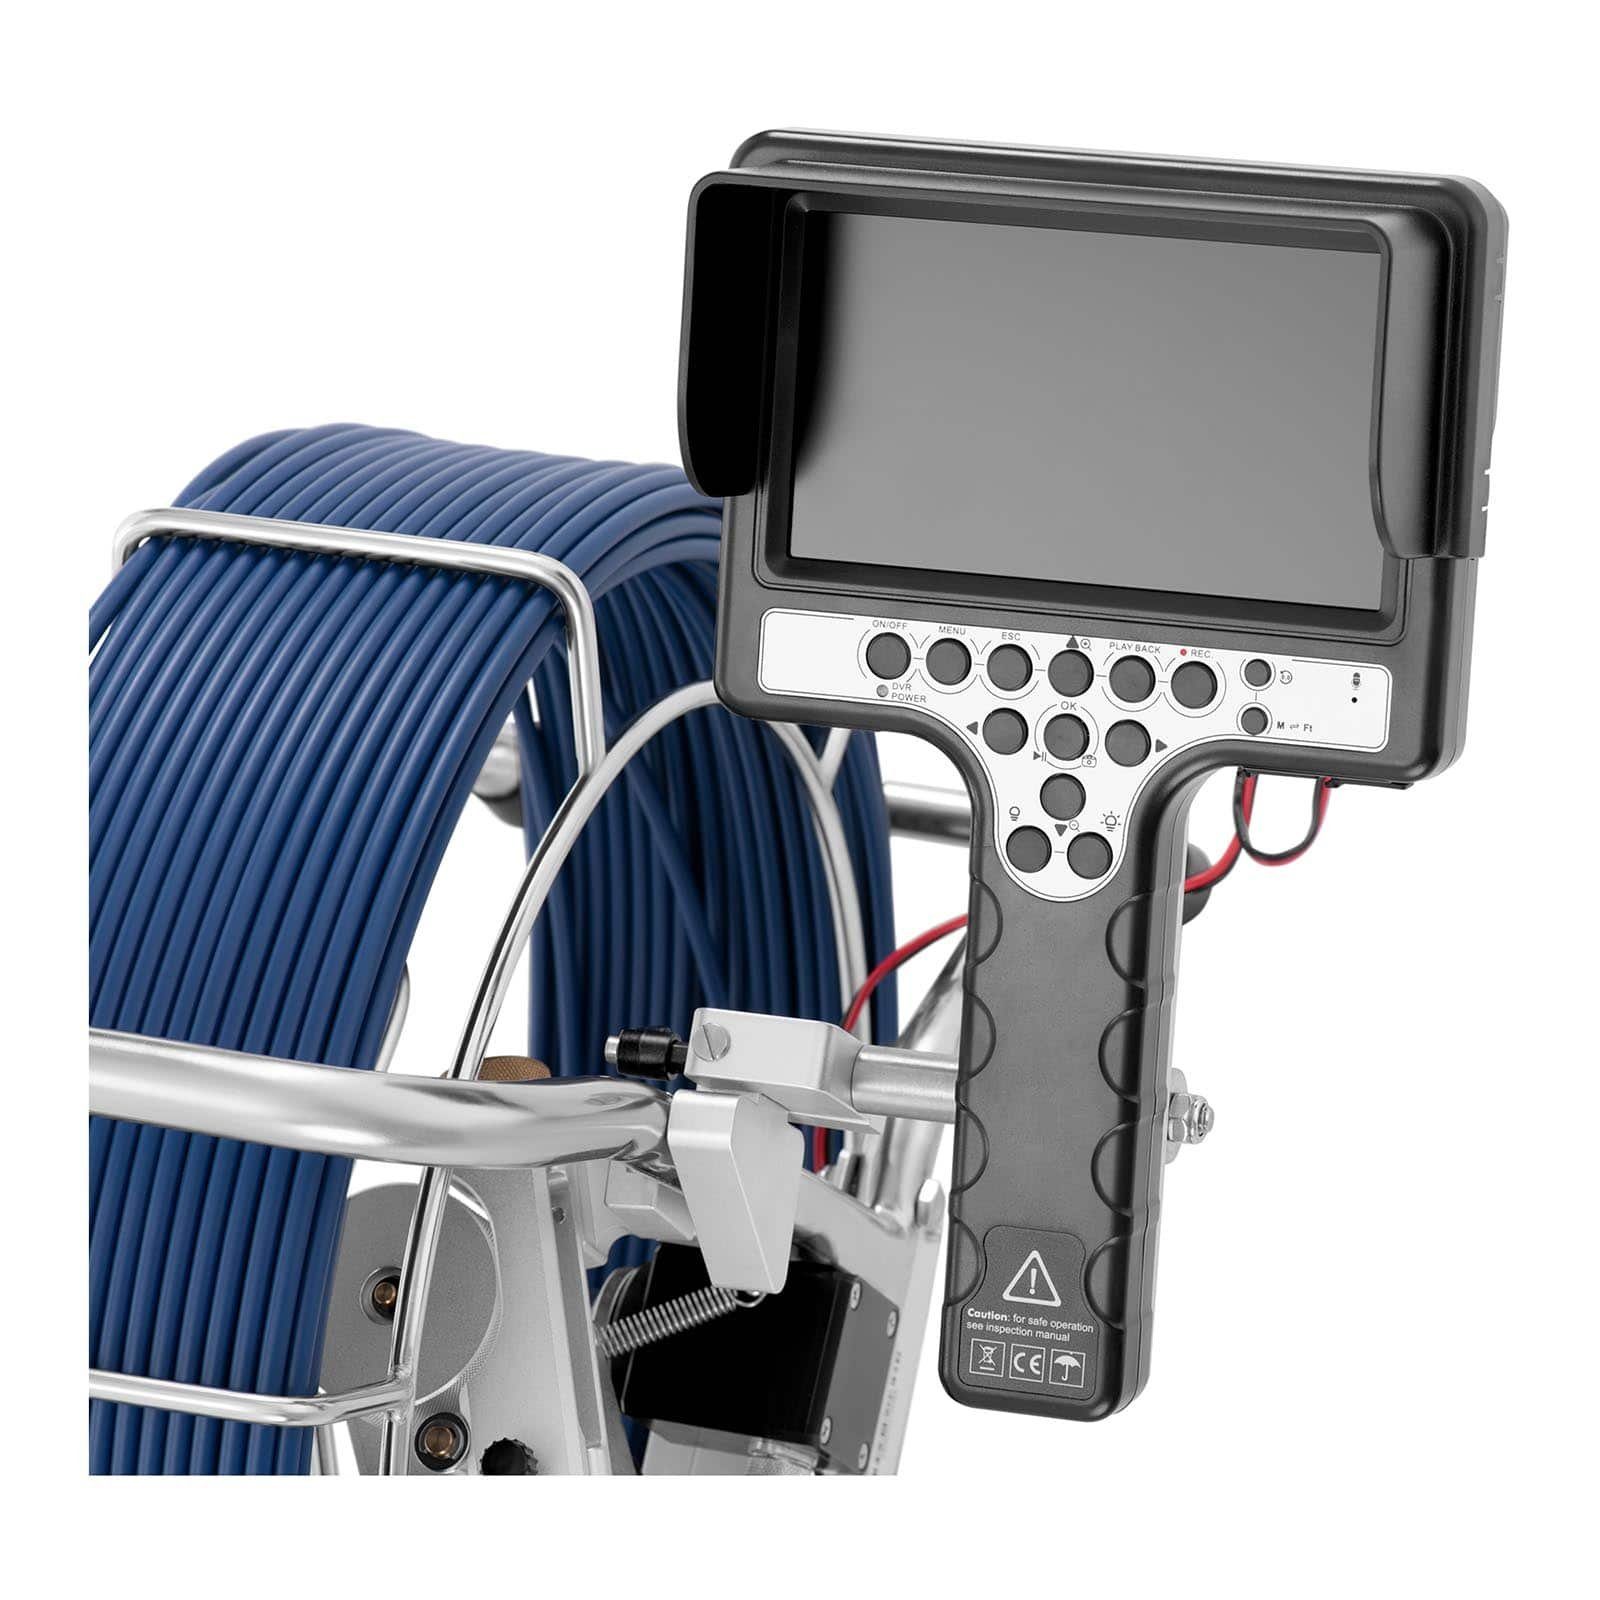 Kamera Steinberg Endoskop Kanalkamera Inspektionskamera Systems Abflusskamera Rohrkamera Inspektionskamera